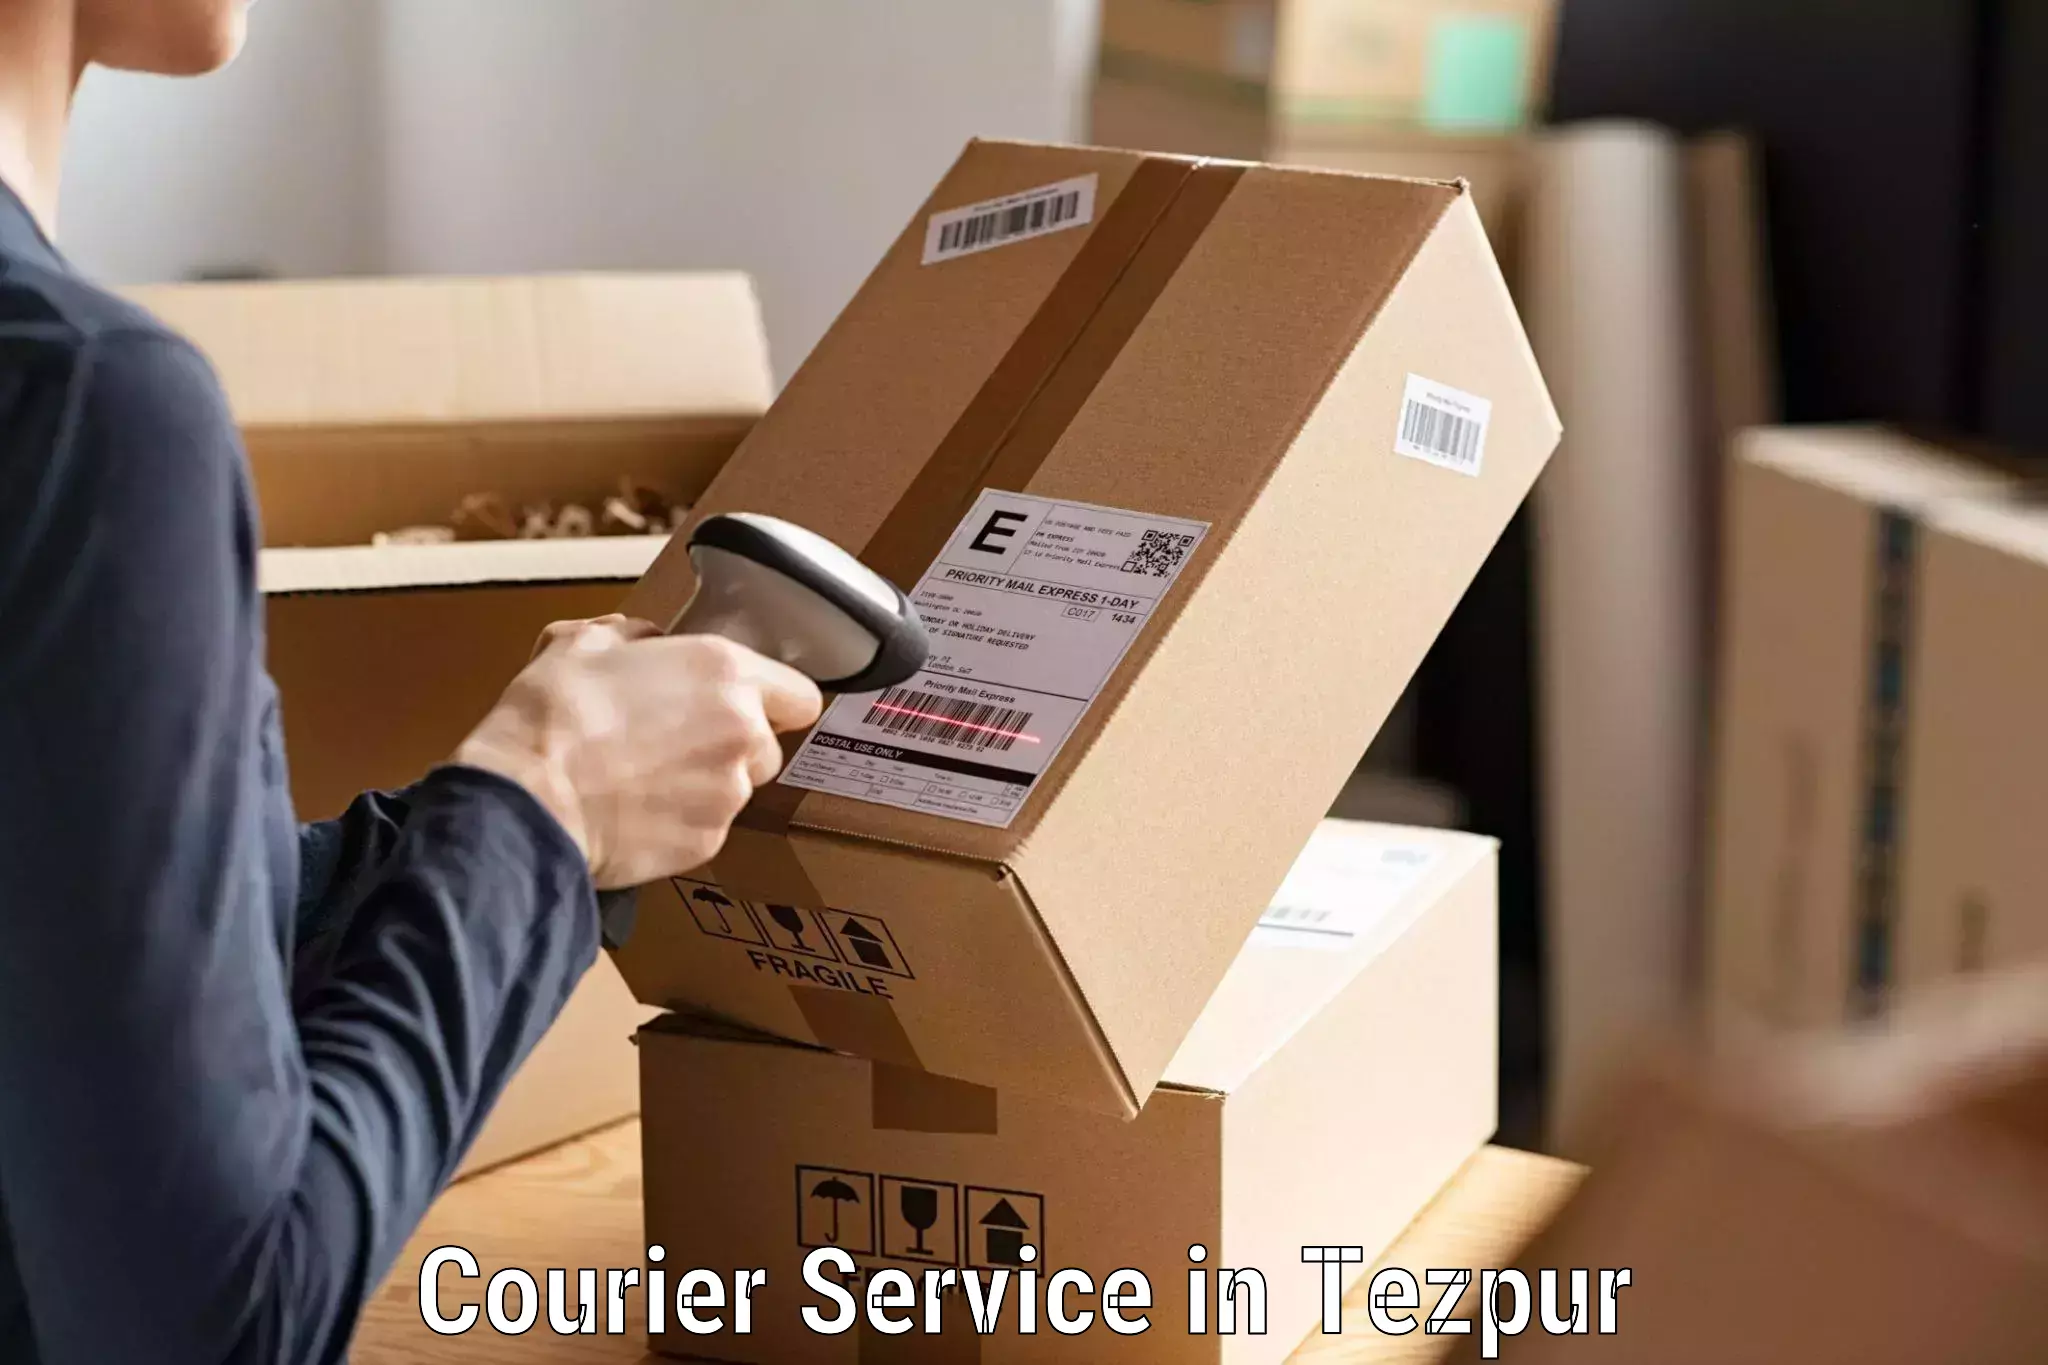 Quick parcel dispatch in Tezpur